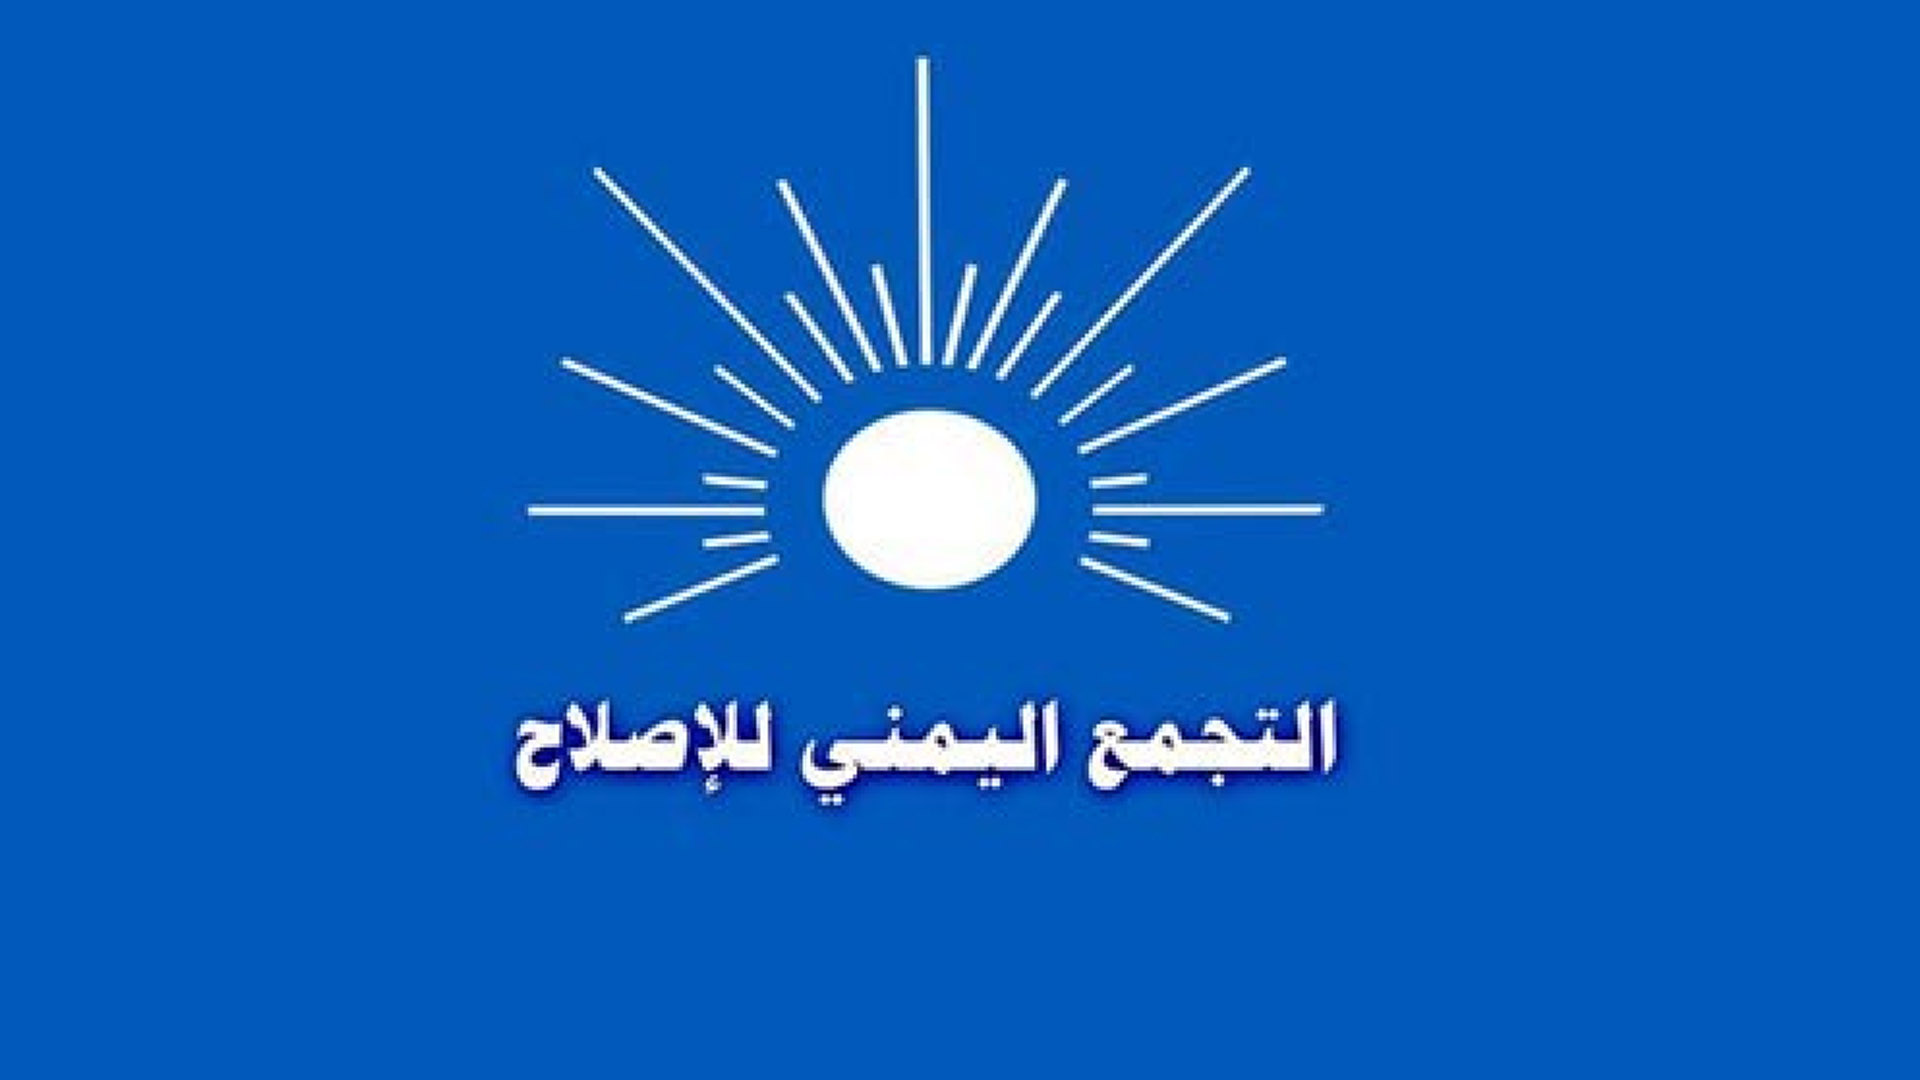 الإصلاح يطالب مجلس القيادة بالوفاء بوعوده في مواجهة الحوثيين وإنهاء الانقلاب